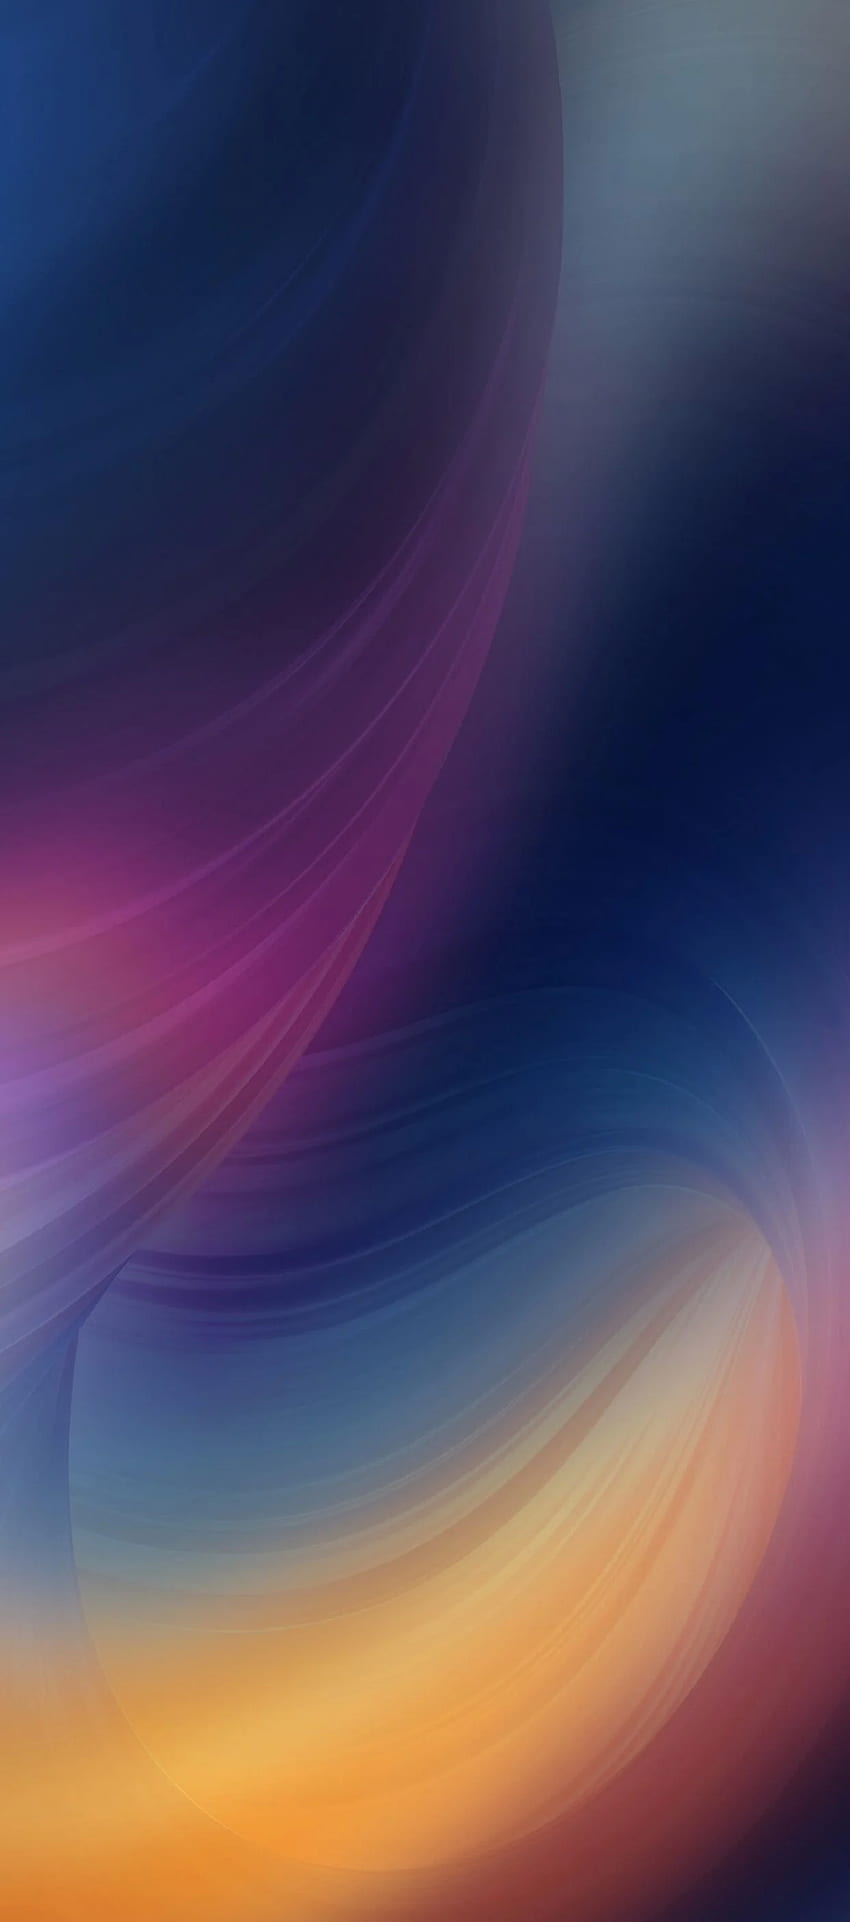 iOS 11, iPhone X, ungu, biru, bersih, sederhana, abstrak, apel,, iphone 8, bersih, cantik, colo. Xperia , iPhone 5s , Huawei , iPhone X Abstrak wallpaper ponsel HD